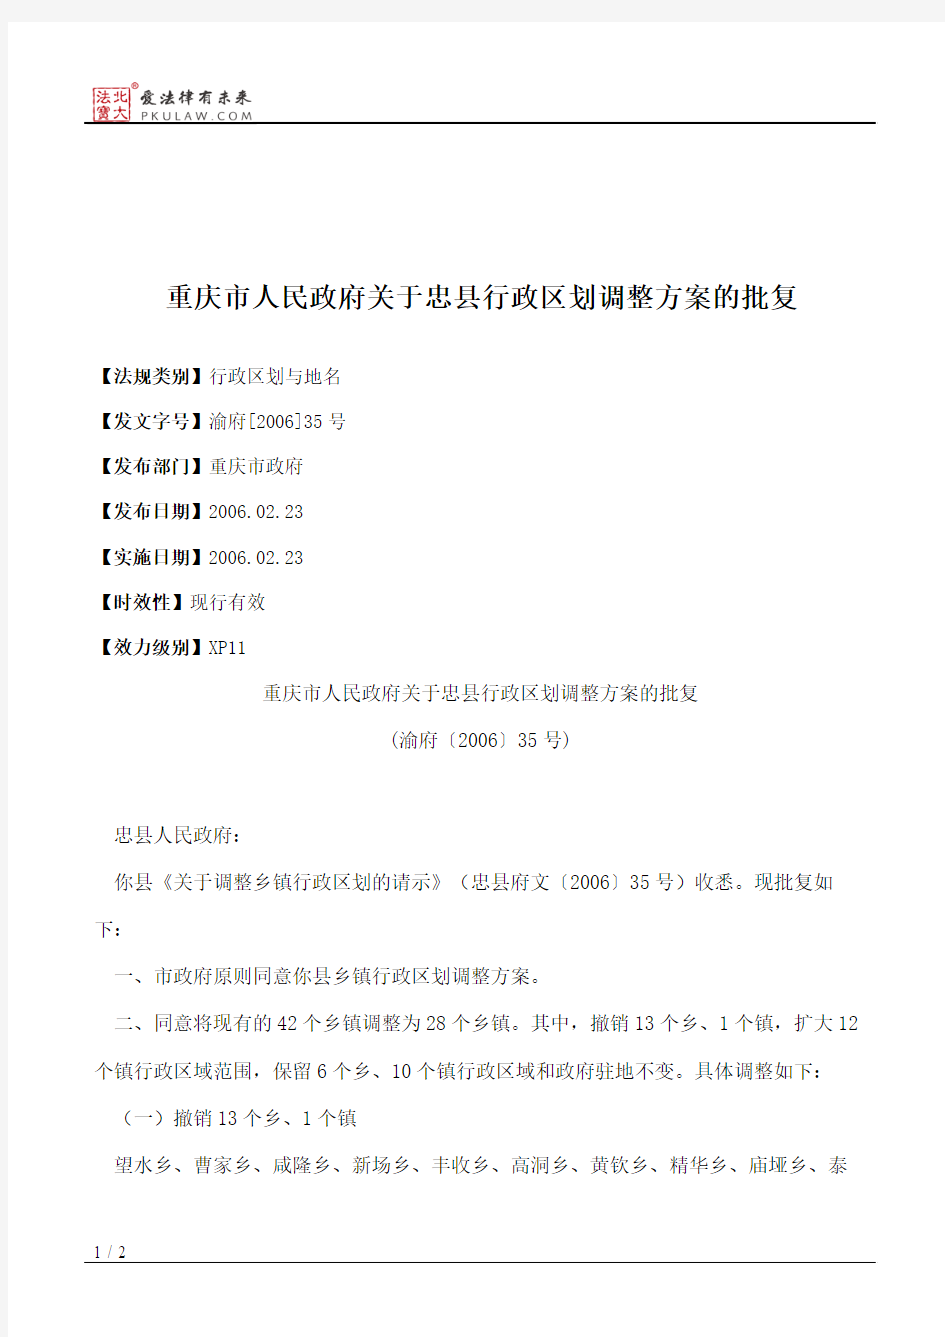 重庆市人民政府关于忠县行政区划调整方案的批复